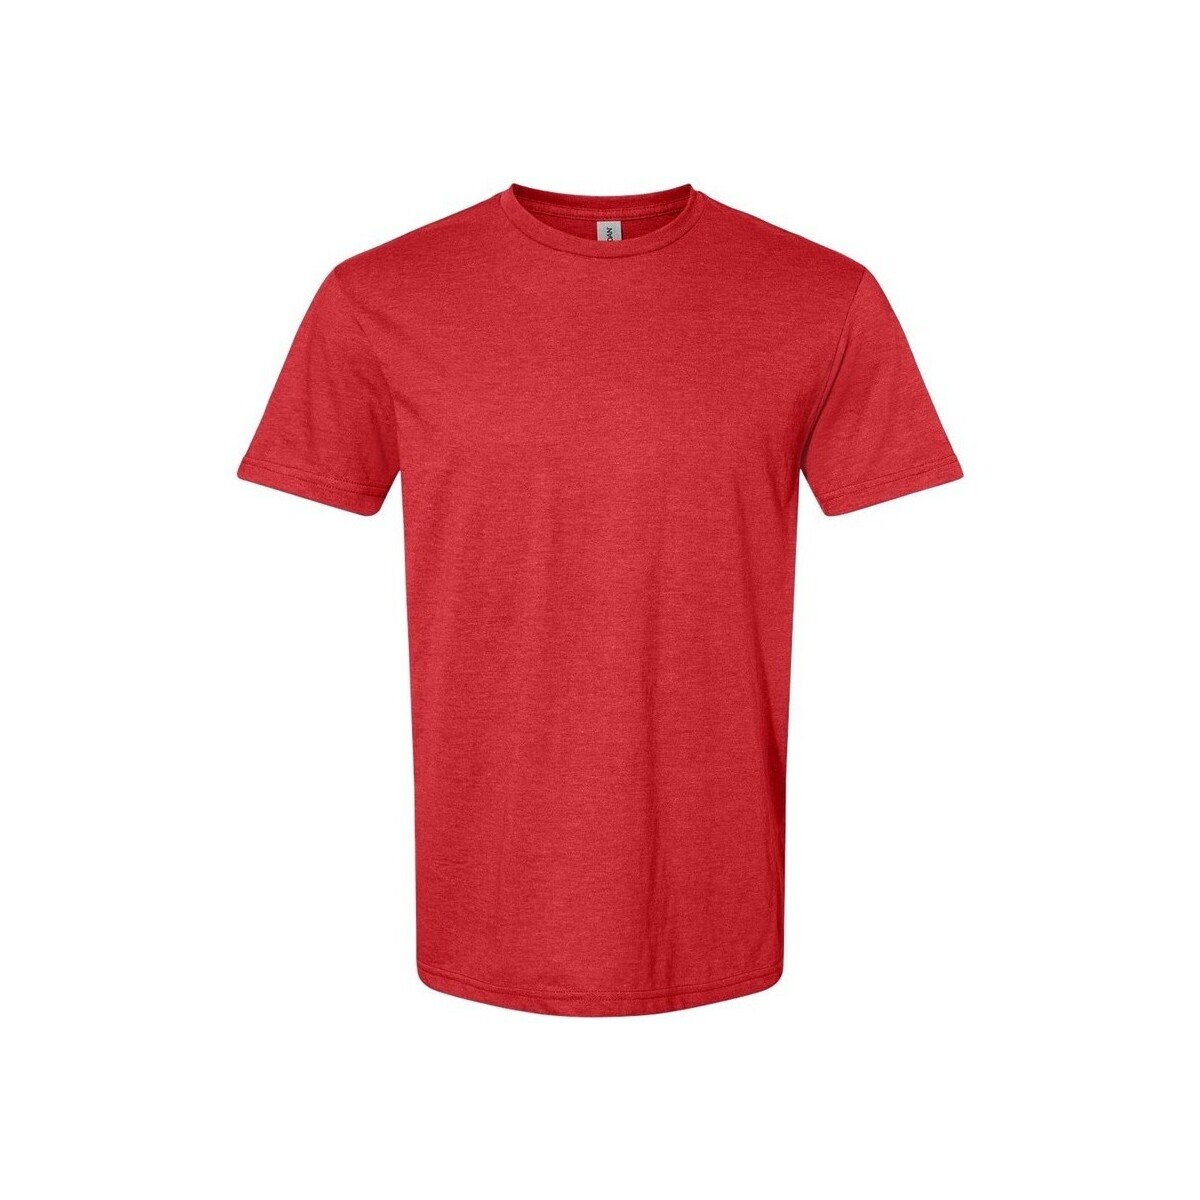 Vêtements T-shirts manches longues Gildan Softstyle Rouge